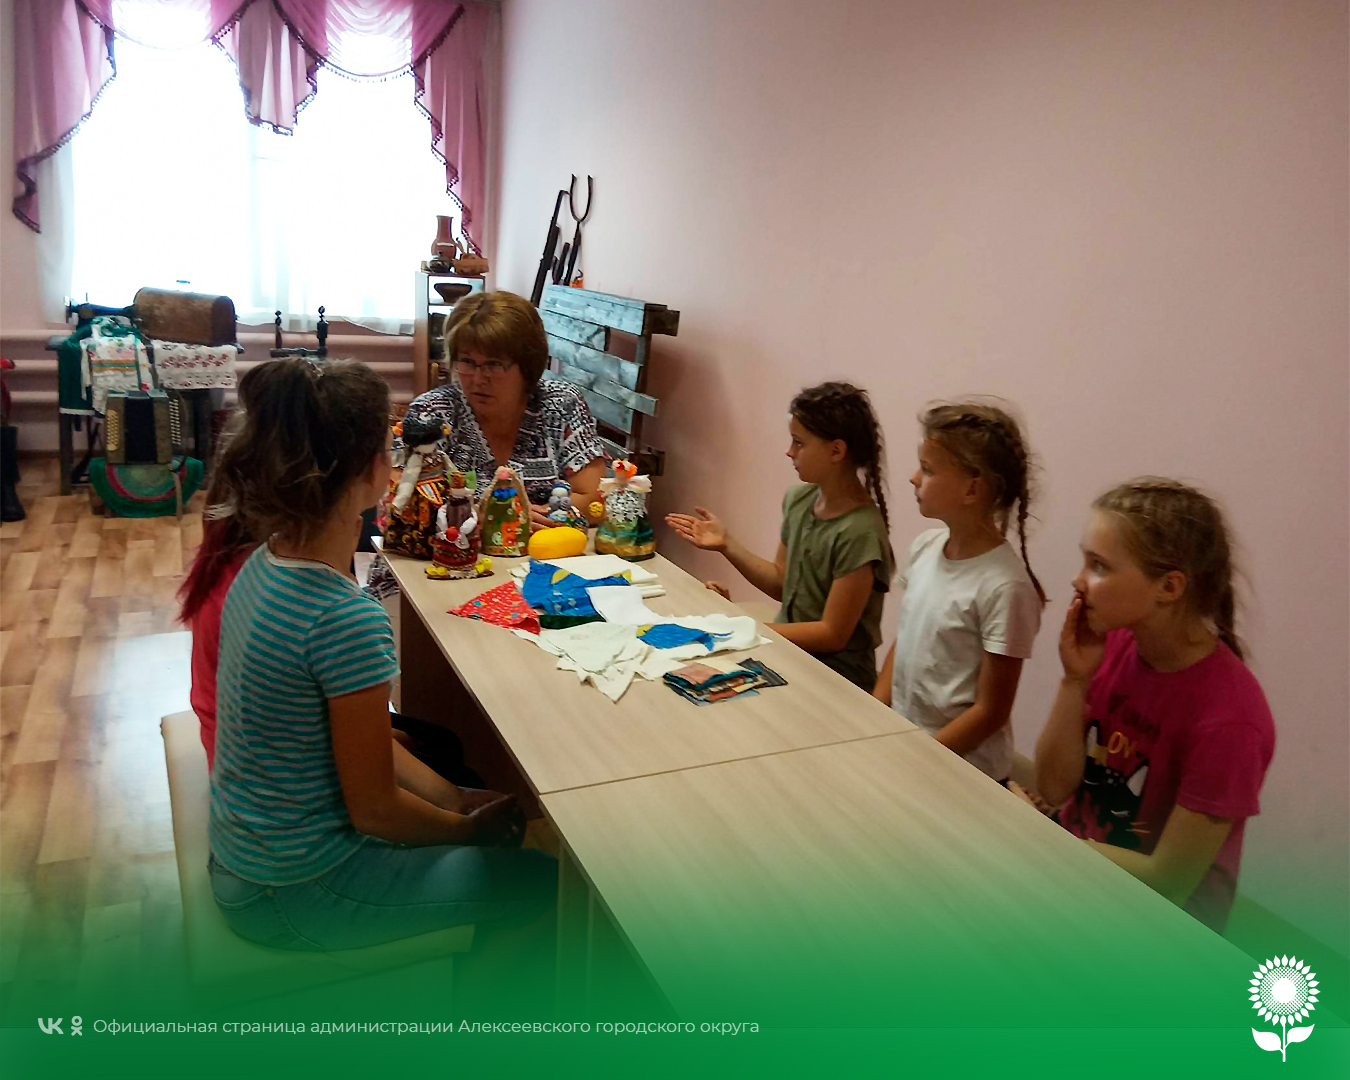 В Центре культурного развития села Мухоудеровка состоялся творческий мастер-класс «Девичьи секреты».